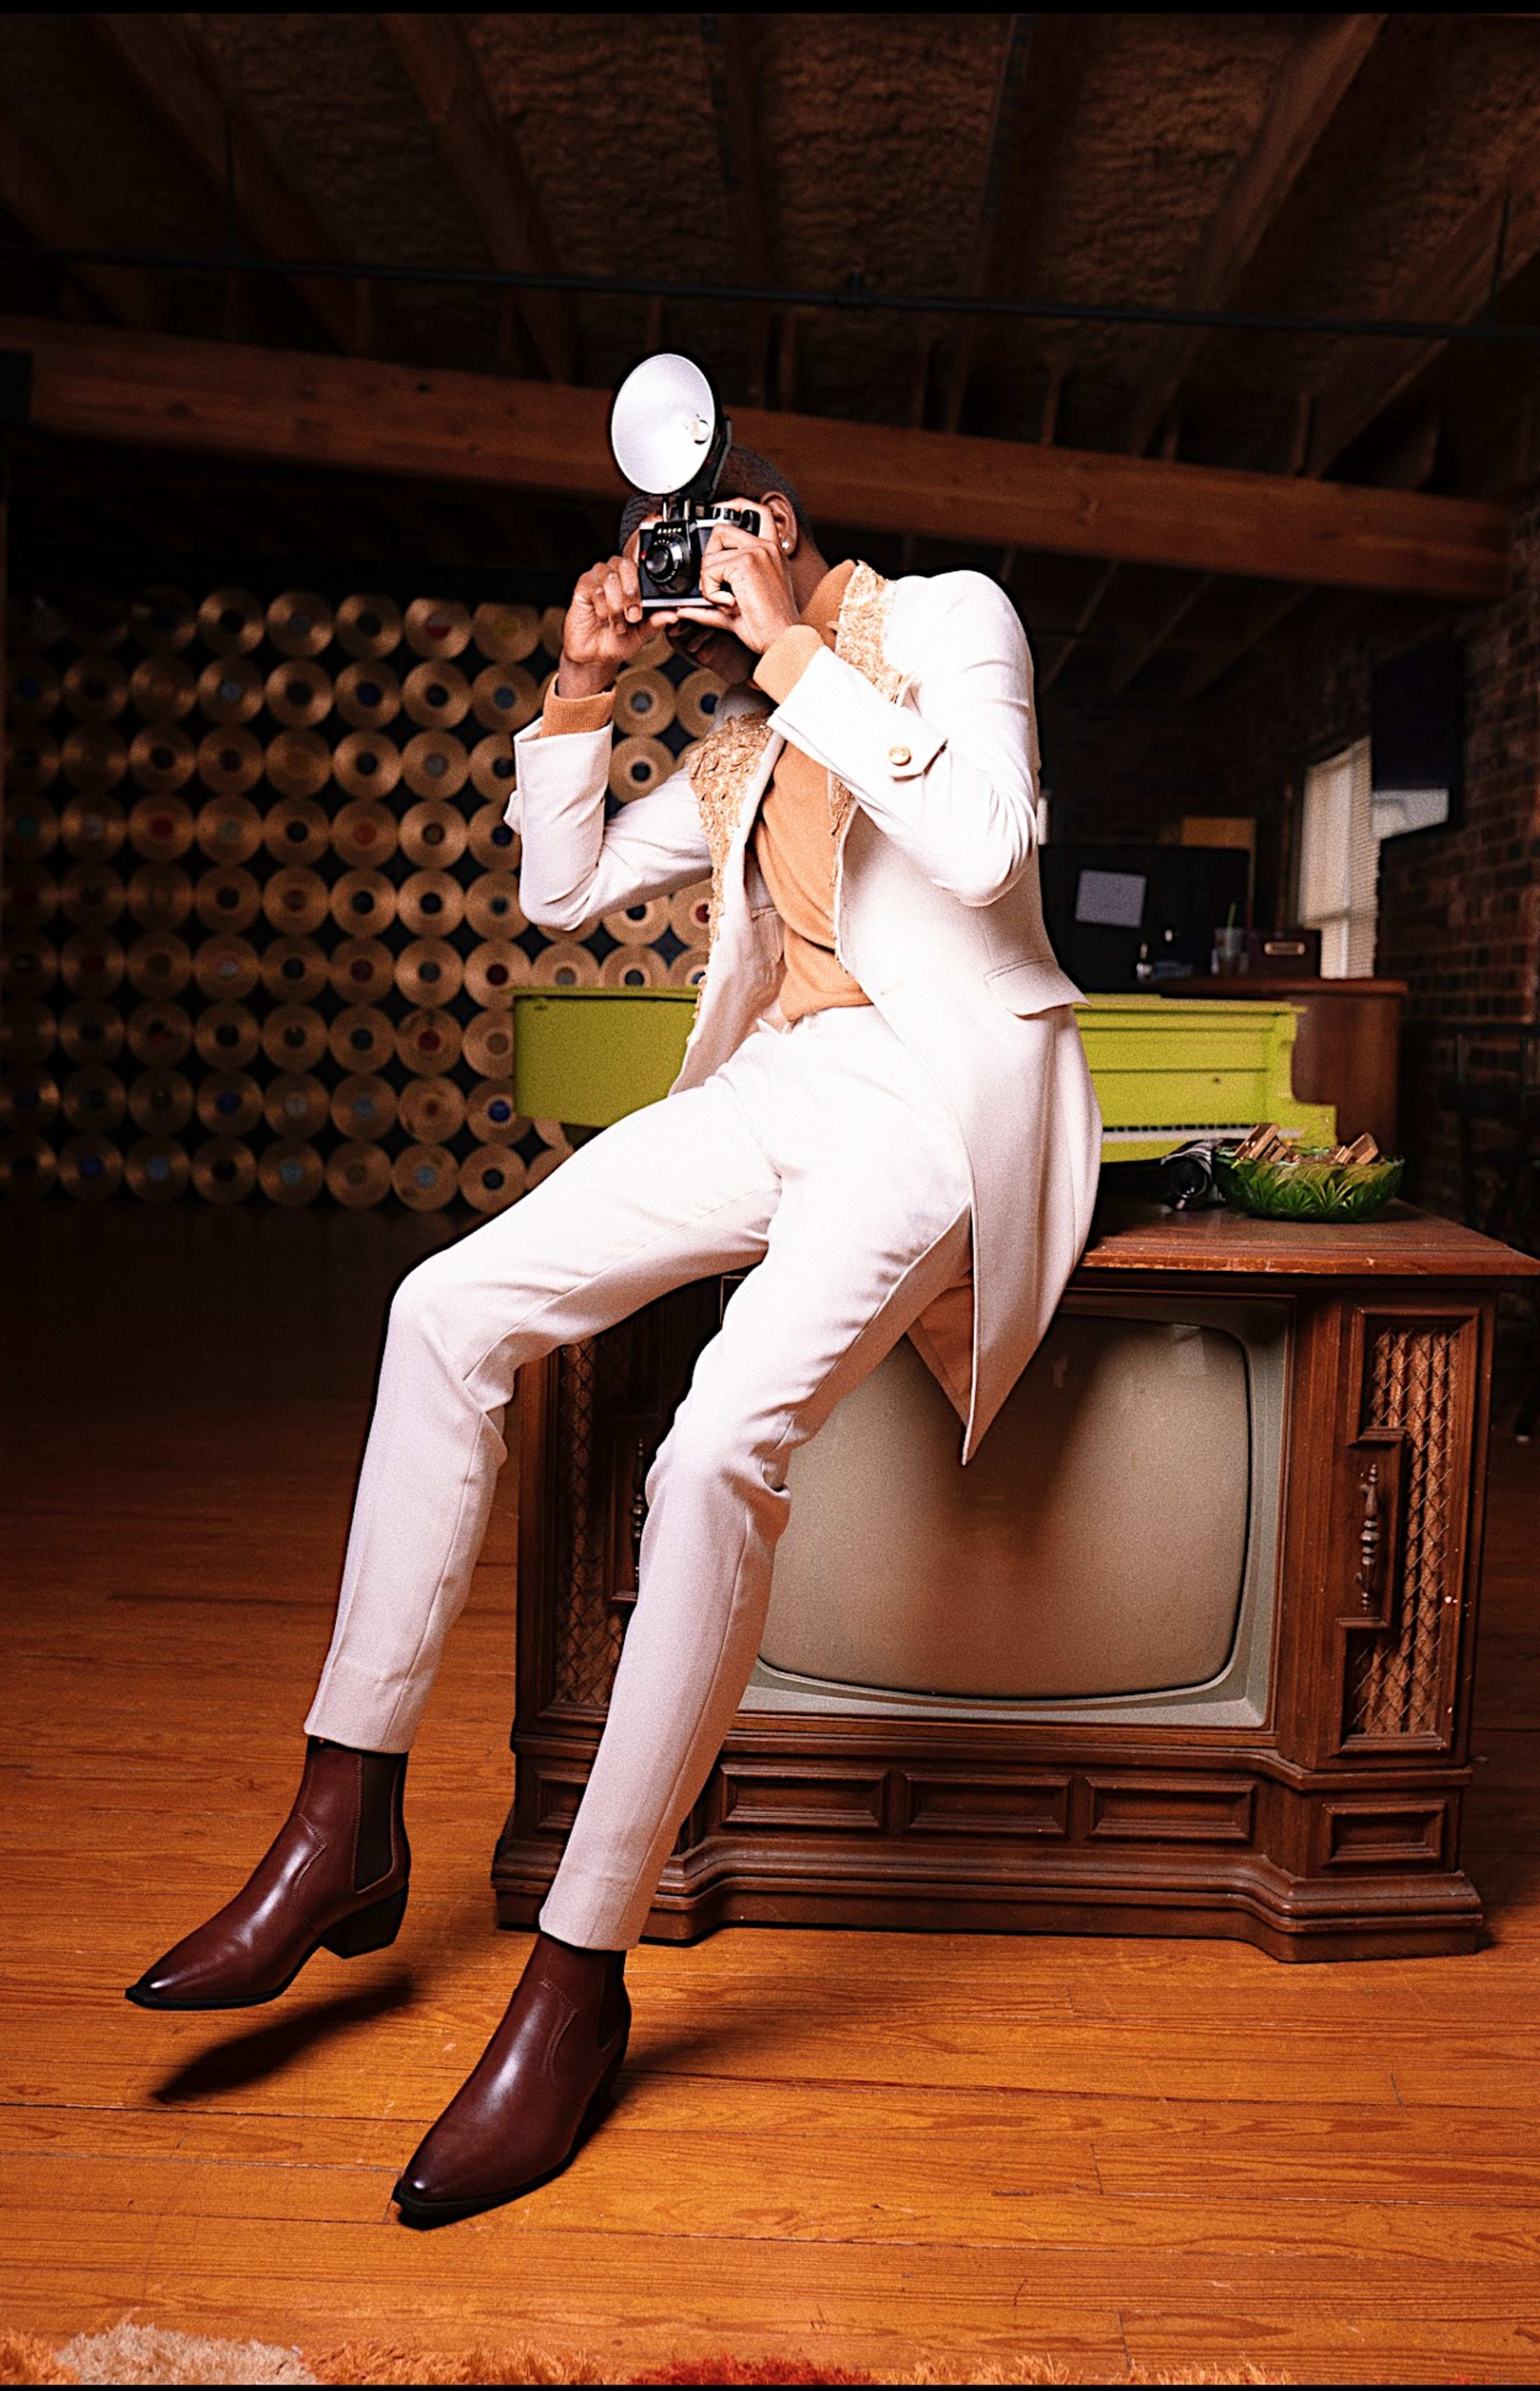 Un hombre con traje blanco posando en un televisor marrón durante una sesión de fotos retro.